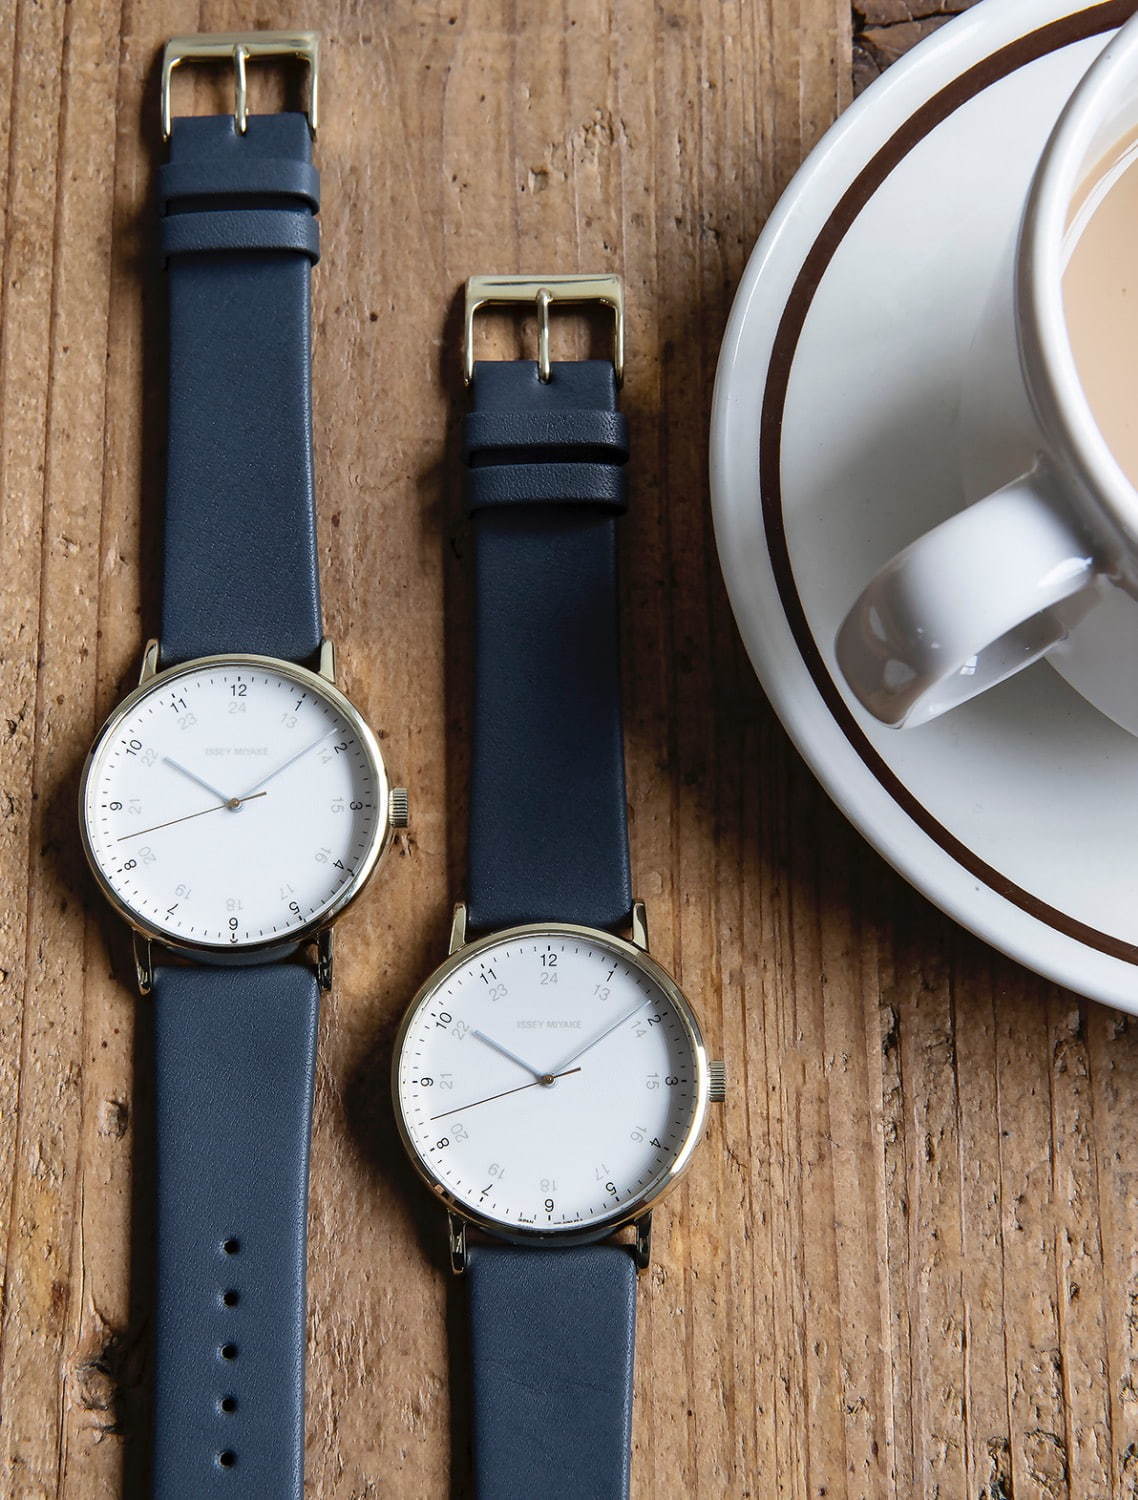 イッセイ ミヤケ ウオッチの腕時計 F エフ 24時間表示 インデックスにゴールドカラーを添えて ファッションプレス